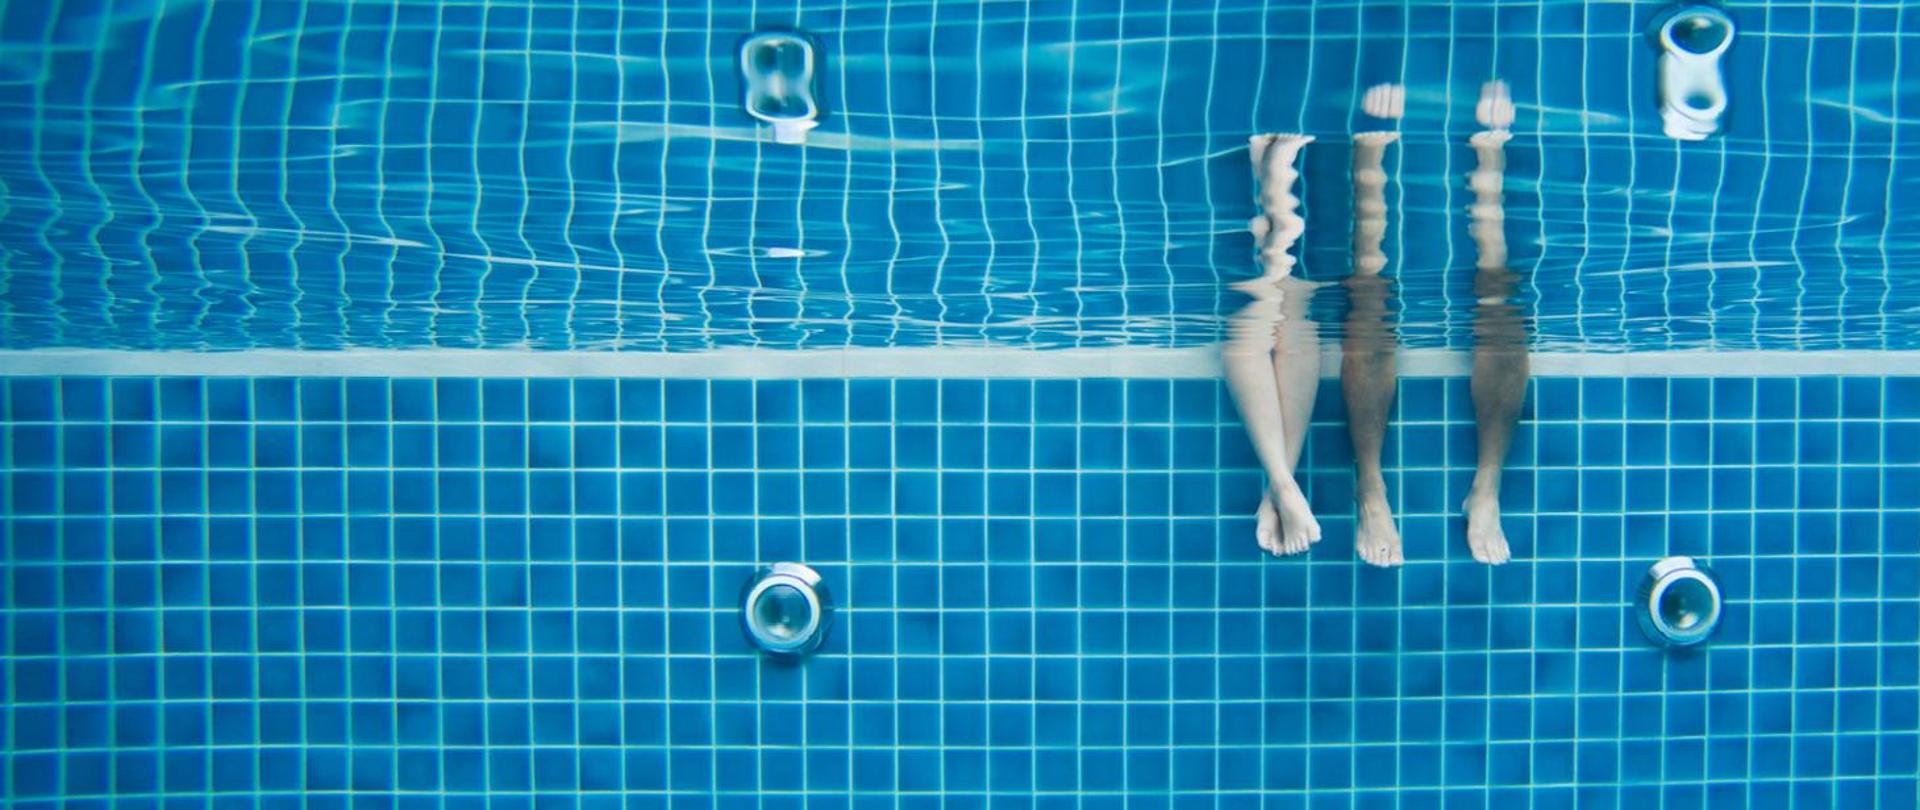 Zdjęcie wykonane pod wodą w basenie. Widać na nim zanurzone nogi dwóch osób. Niebieskie kwadratowe kafelki z białymi fugami. Na ścianie widoczne dwie lampy basenowe.